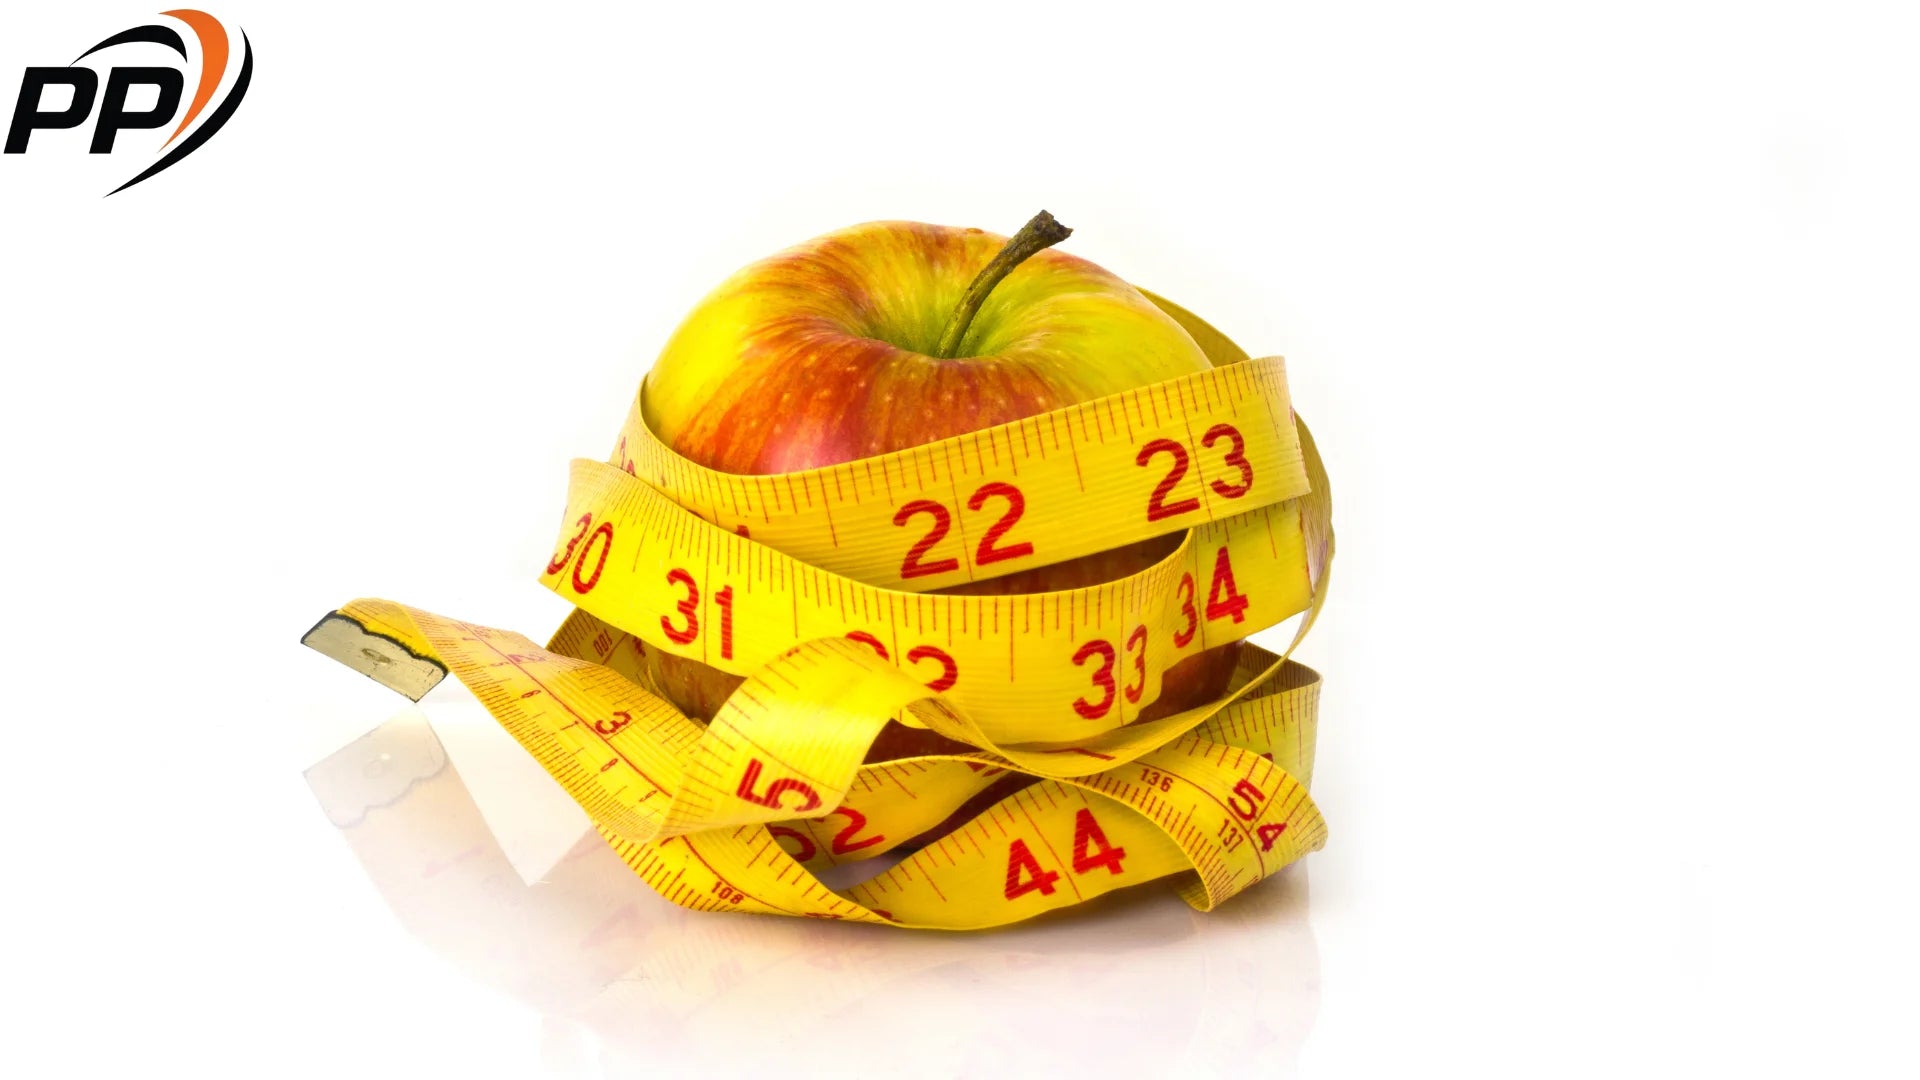 ябълка за контролиране на апетита и отслабване Pen Peptide